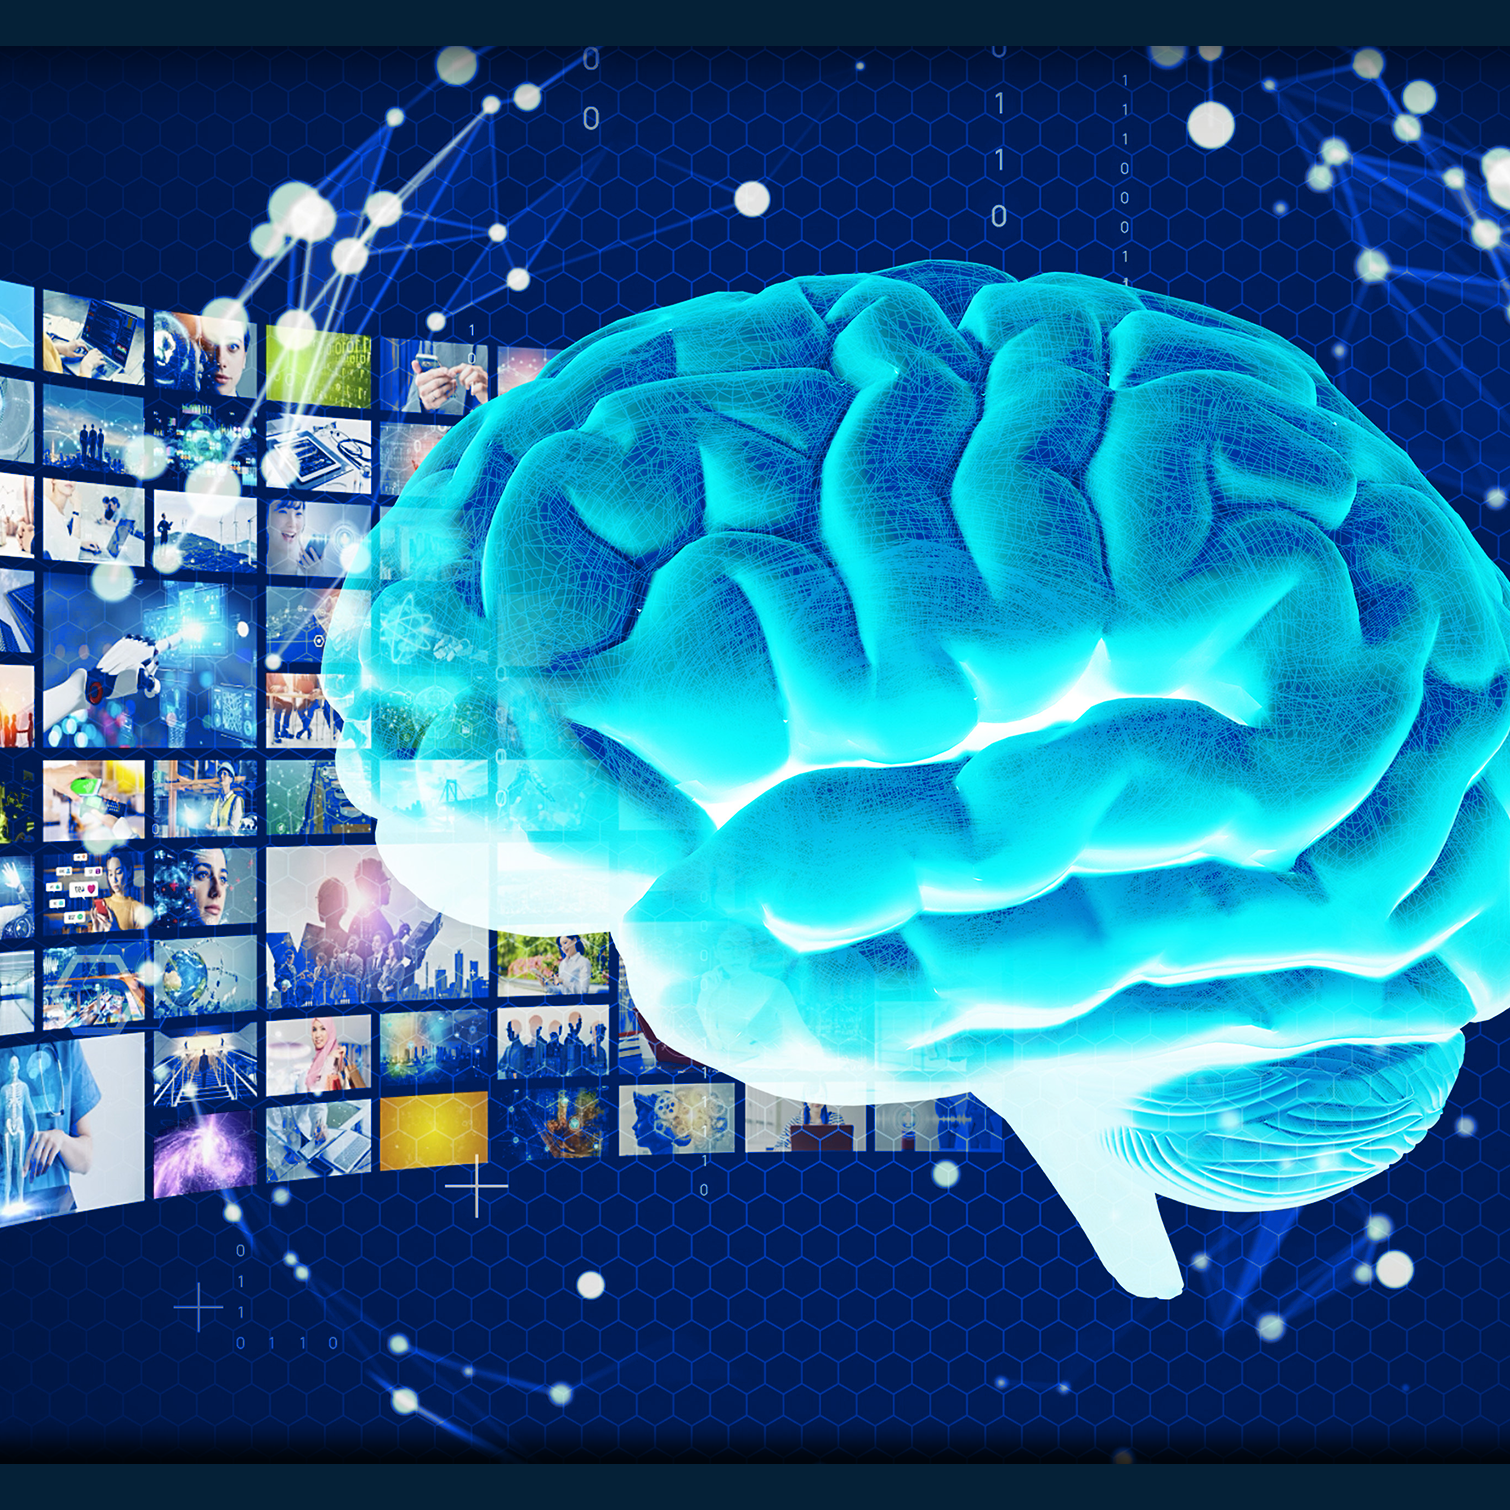 Image de dizaines d’écrans de télévision immergeant de l’illustration d’un cerveau humain. 